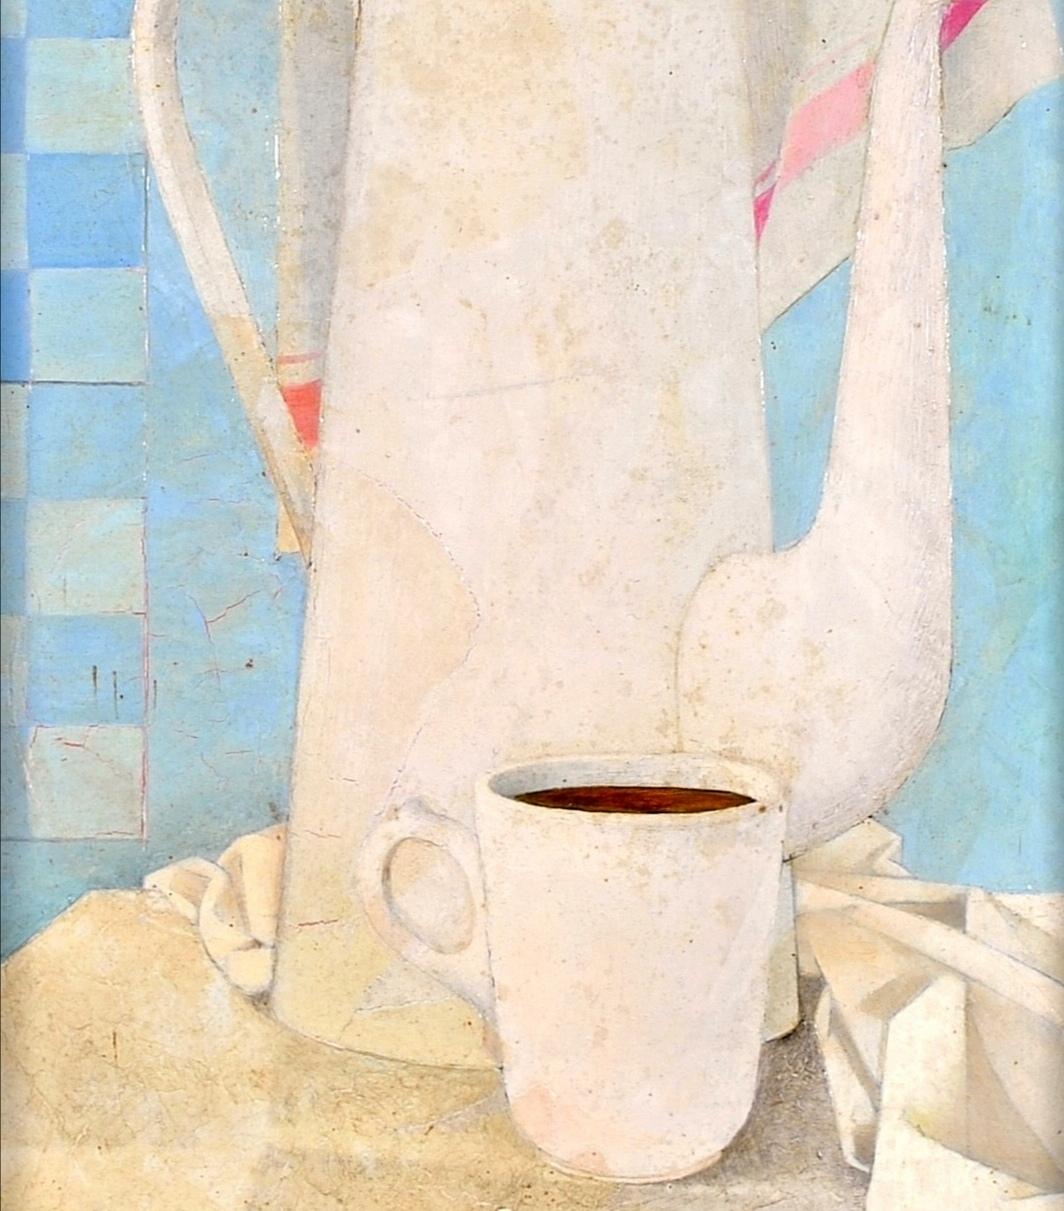 Une belle huile sur panneau cubiste française signée et datée de 1957 représentant une cafetière blanche et une tasse de café. Présentée dans son cadre d'origine en tissu et bois doré.

Une belle peinture à l'huile française originale qui ferait